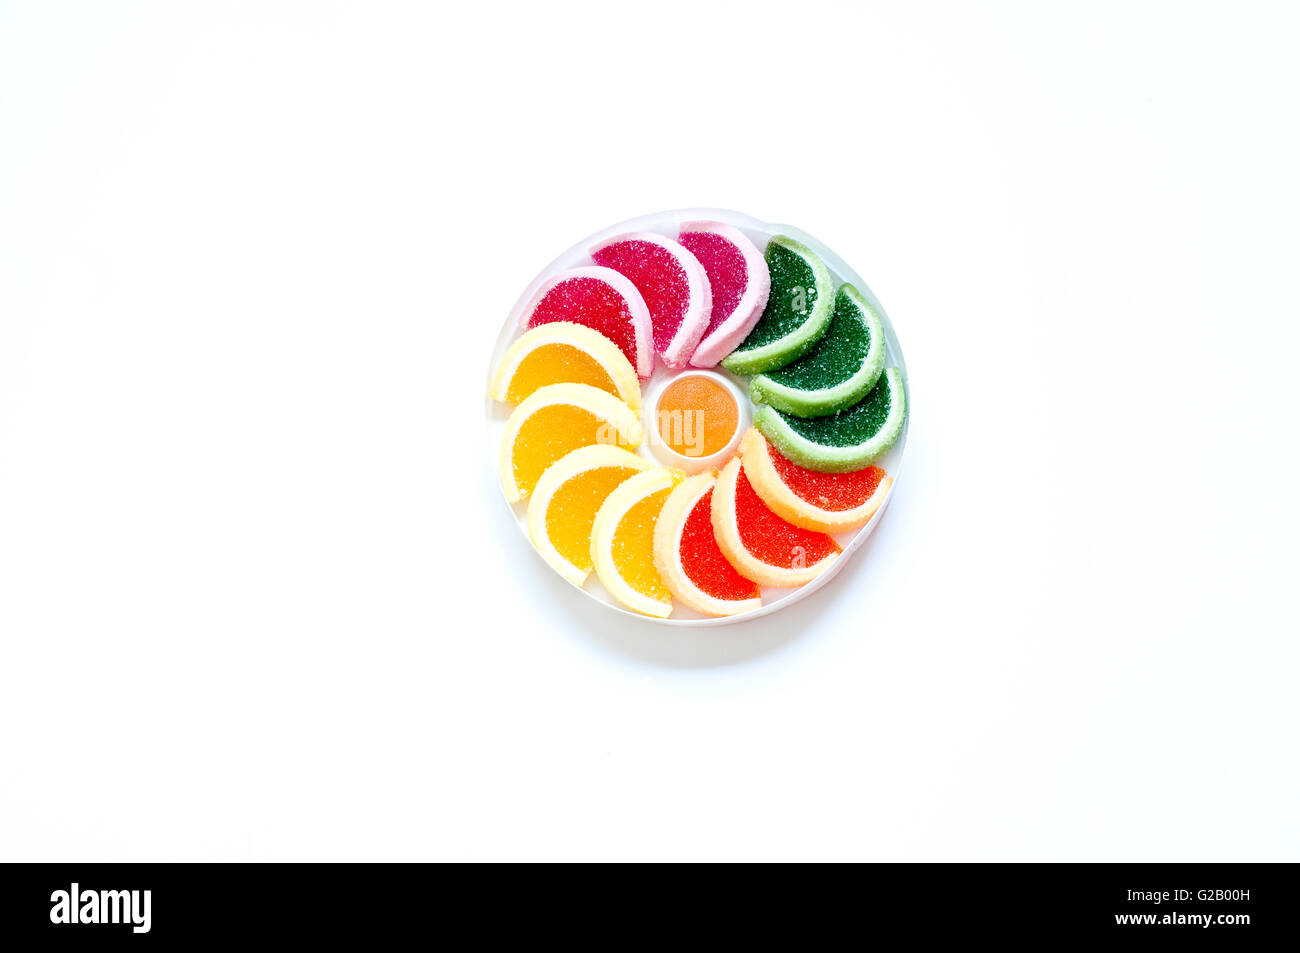 Fruit Slices – Evolution Candy